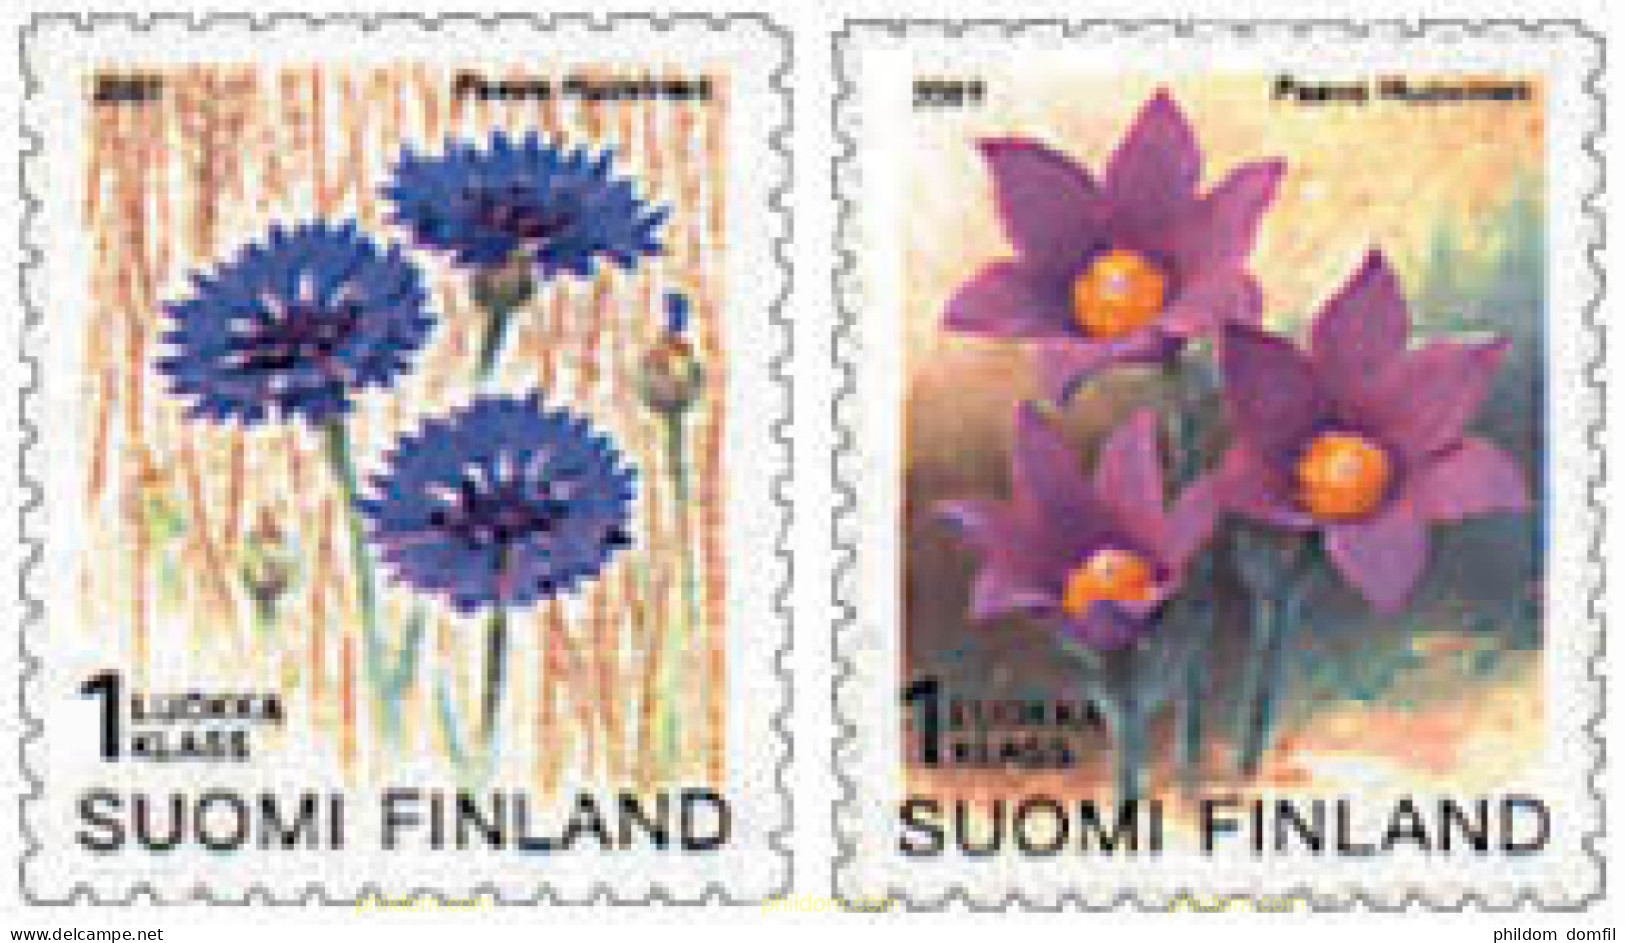 89161 MNH FINLANDIA 2001 FLORA - Neufs